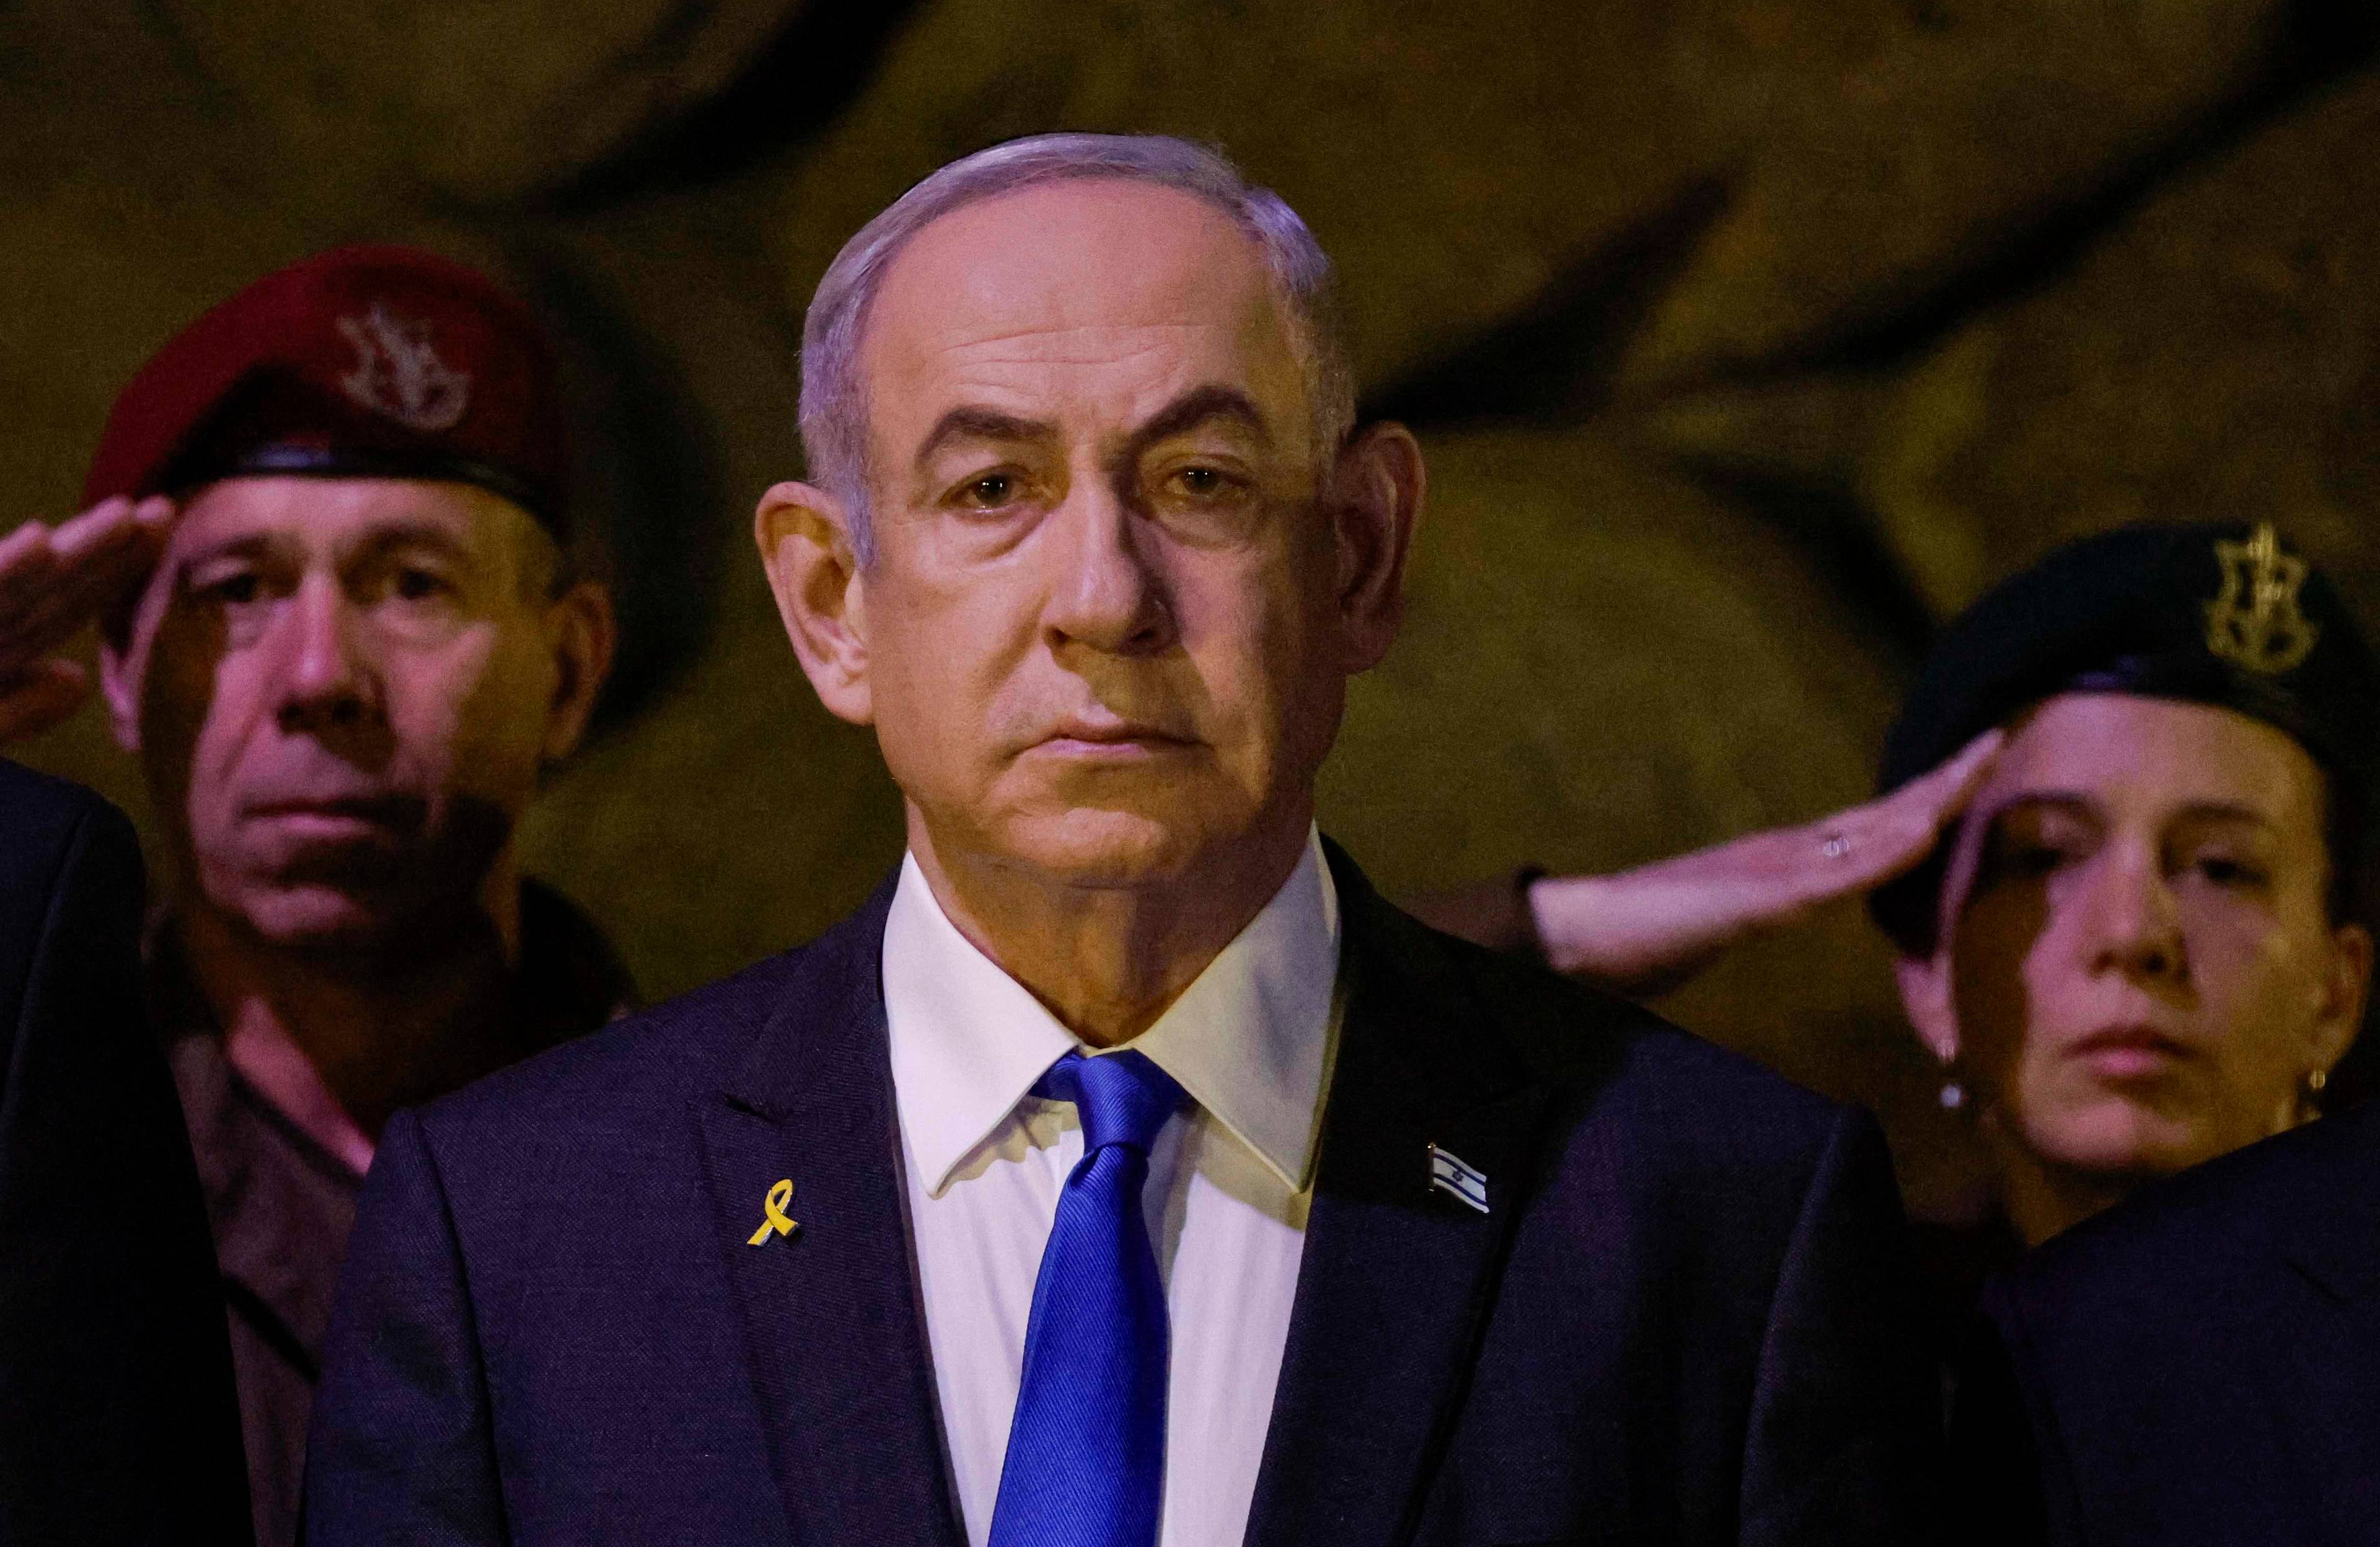 Binjamin Netanjahu, po jego prawej i lewej stronie żołnierz i żołnierka którzy salutują